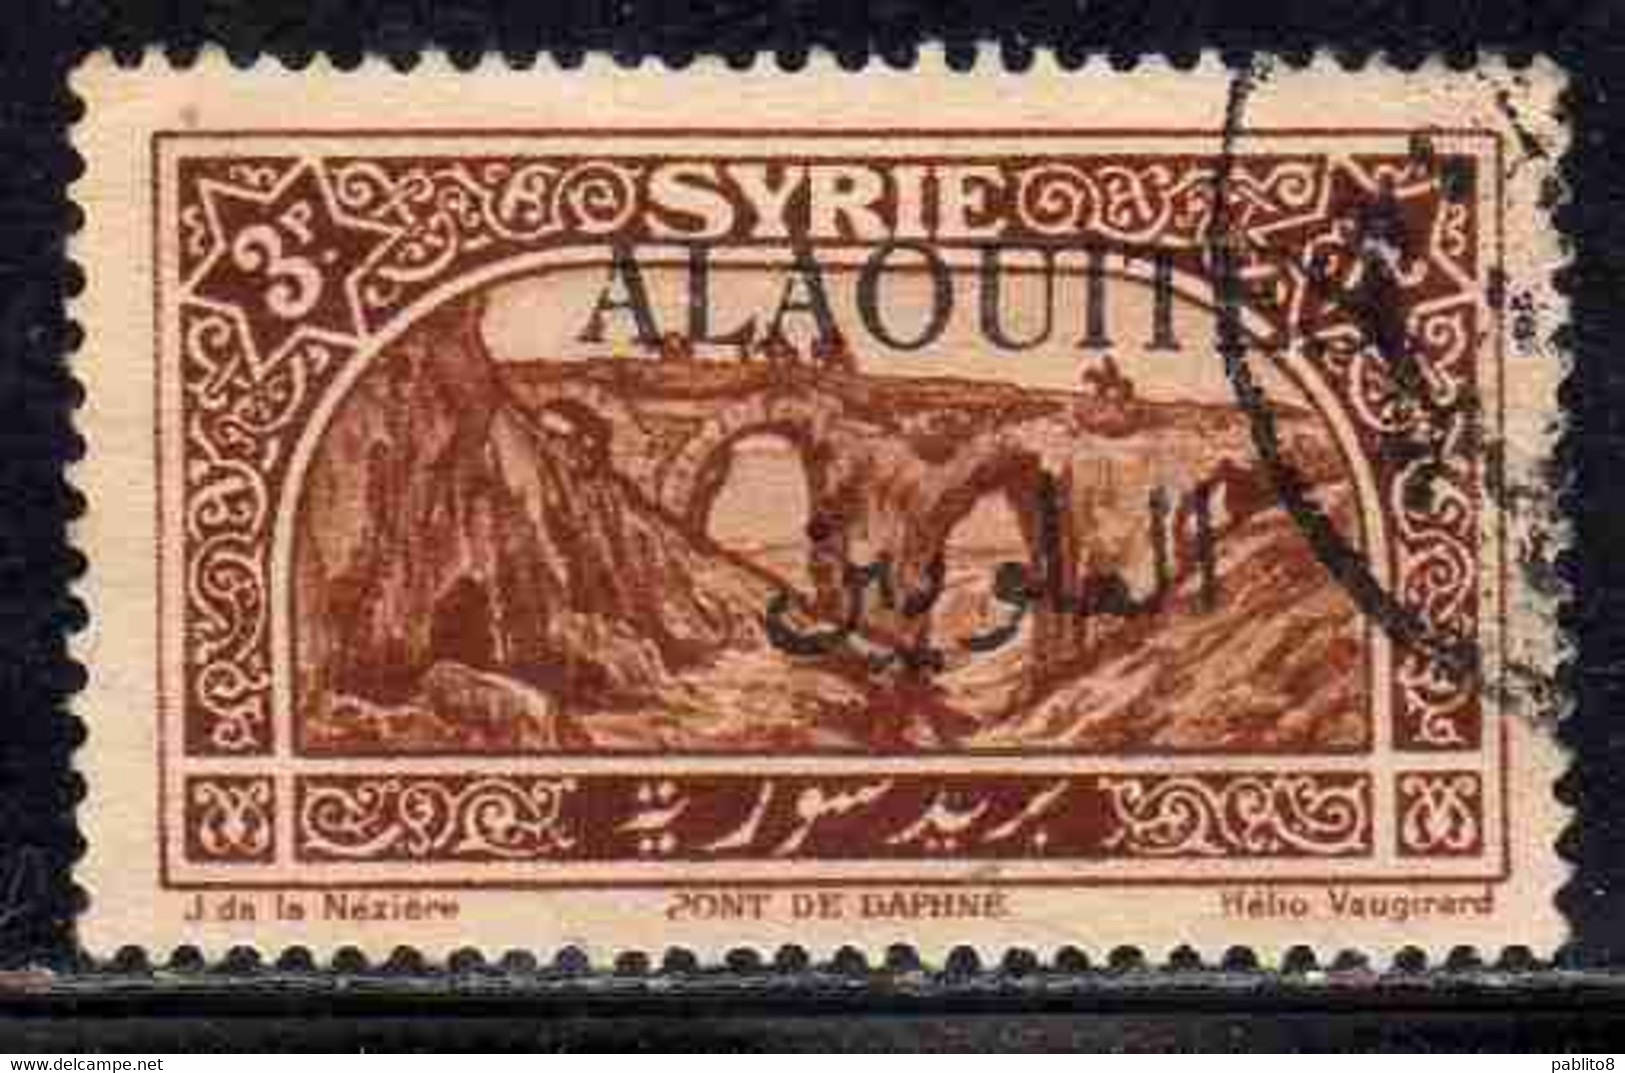 ALAOUITES SYRIA SIRIA ALAQUITES 1925 BRIDGE OF DAPHNE 3p USED USATO OBLITERE' - Gebruikt